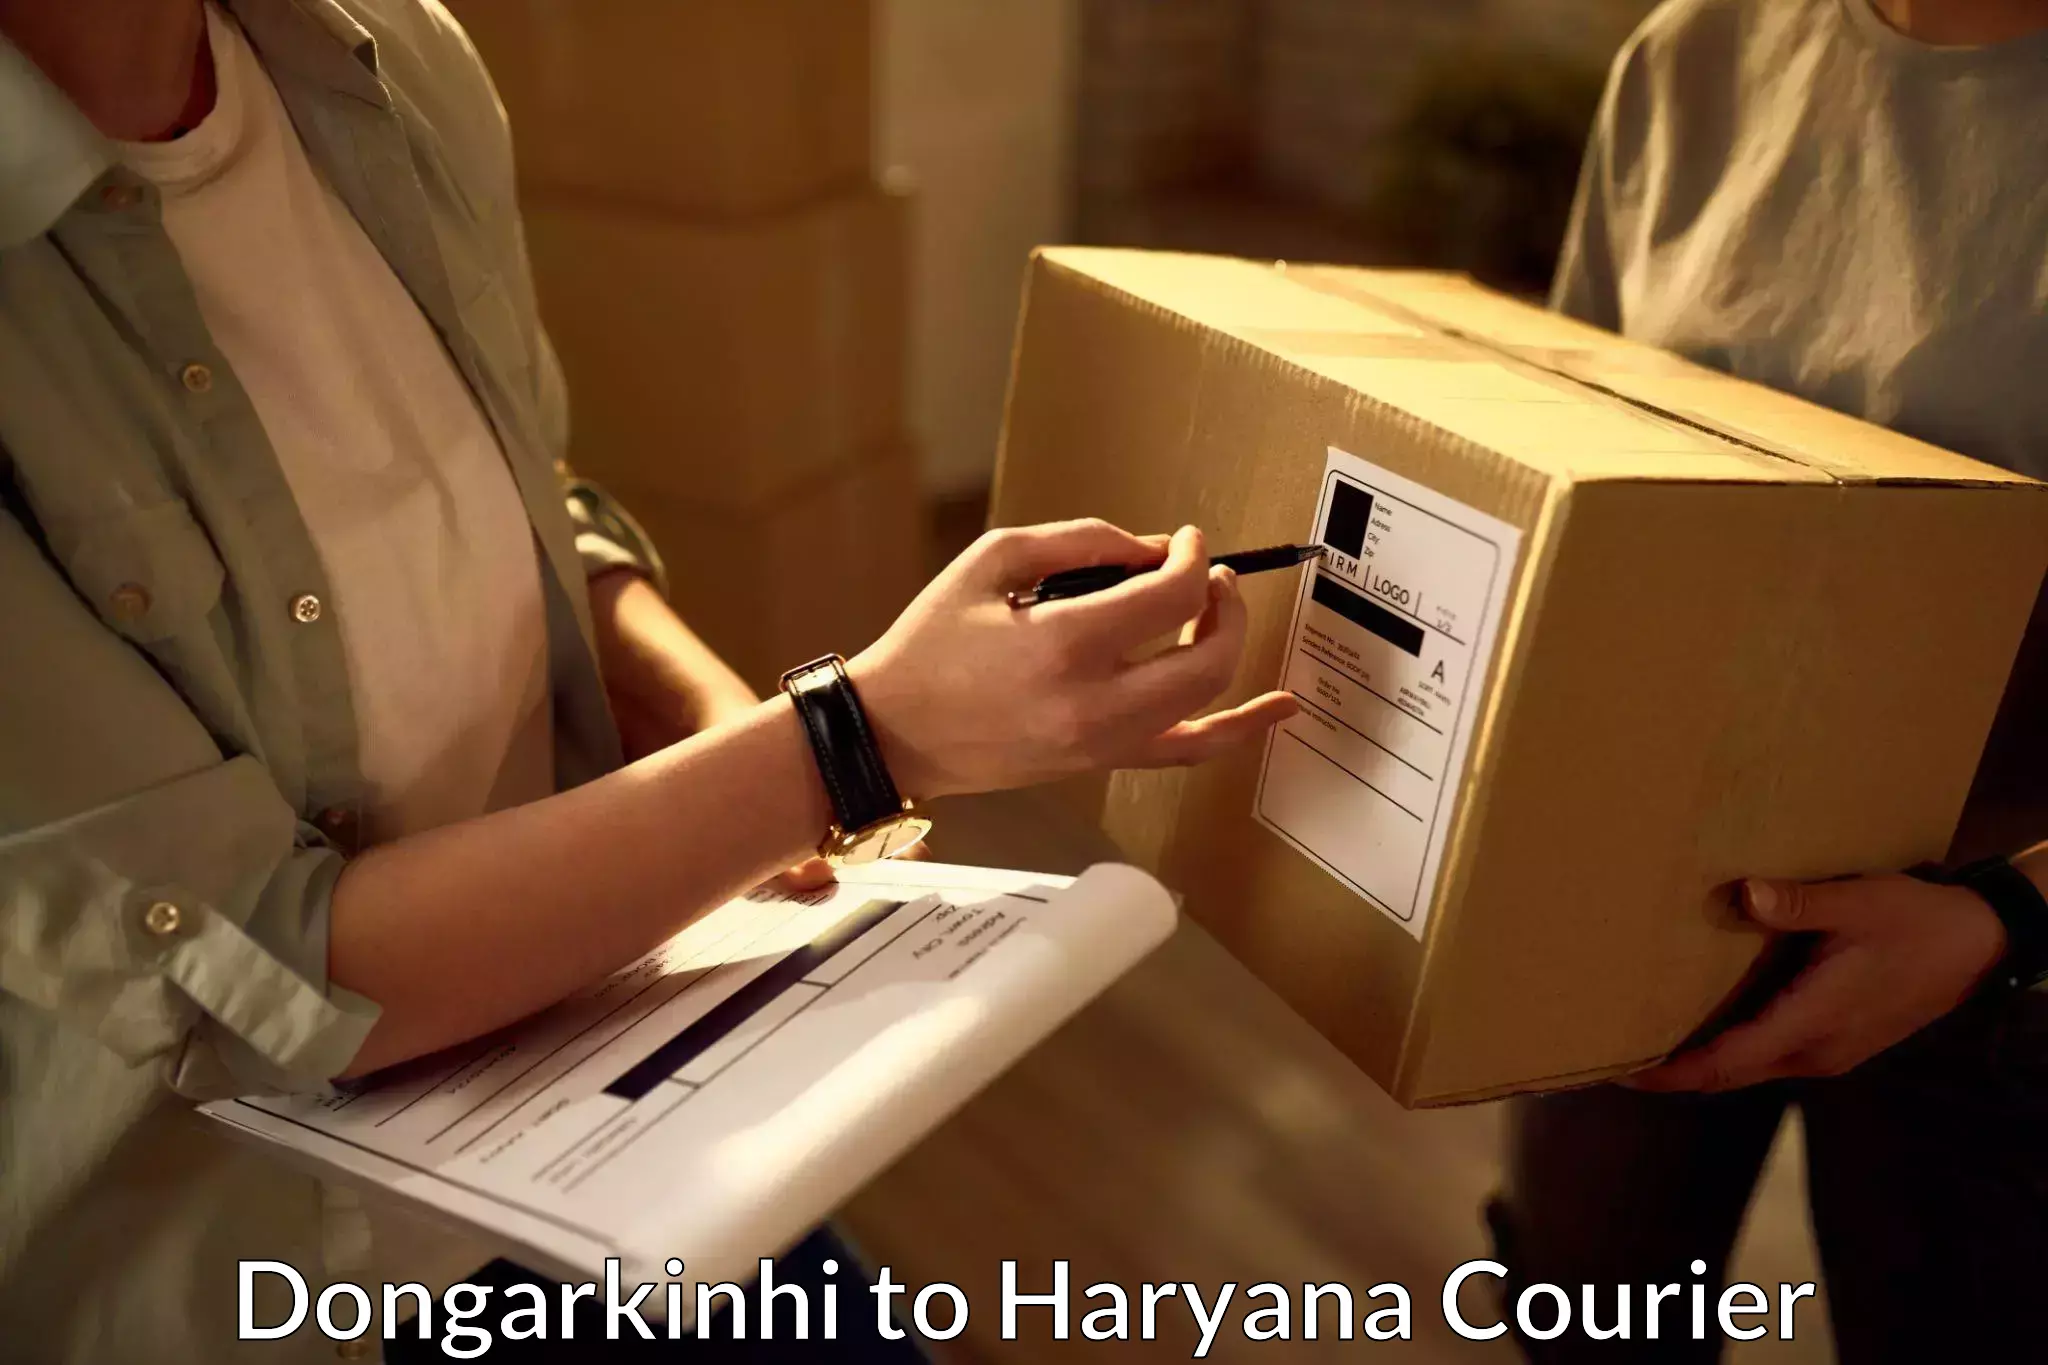 Urgent courier needs Dongarkinhi to Mandi Dabwali